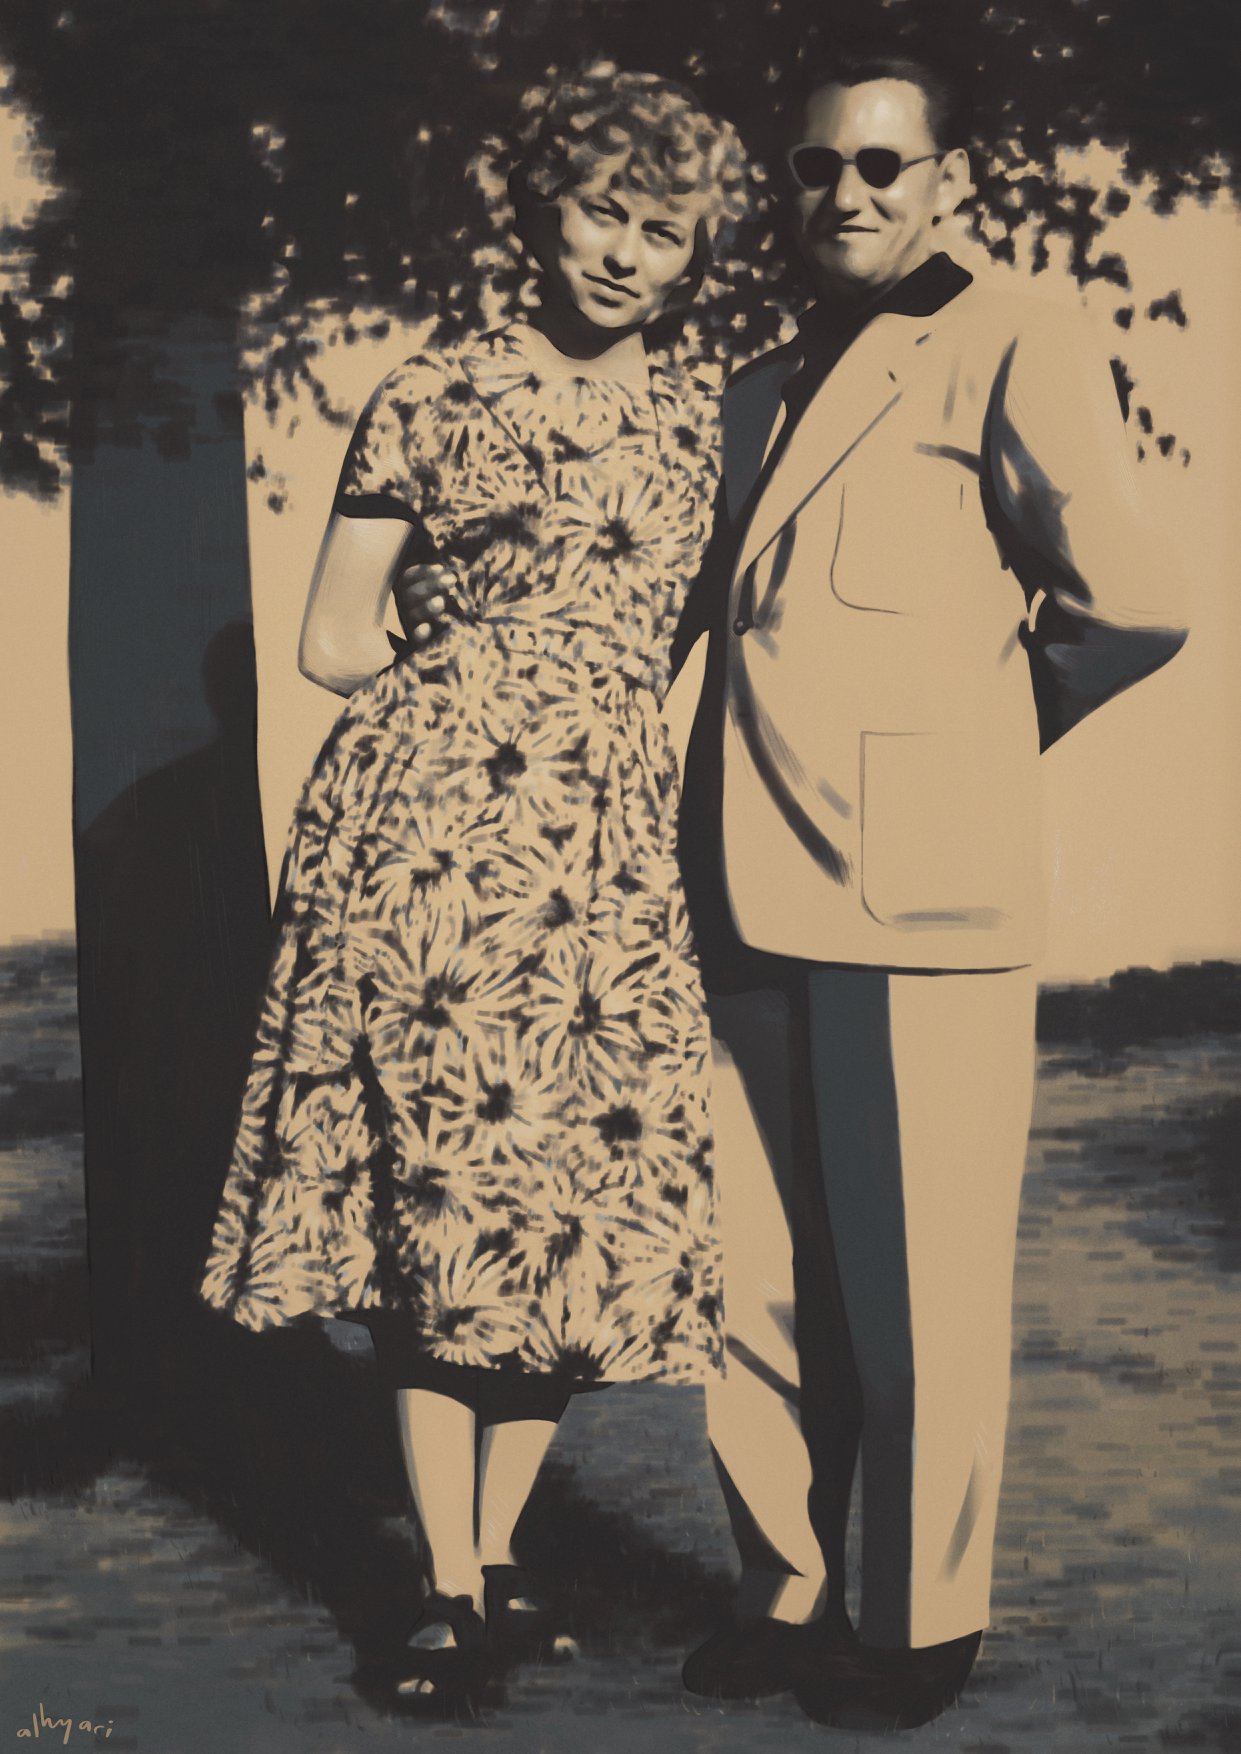 لوحة رقمية تصور رجلاً وامرأة كهلين، واقفين أمام شجرة. من إنتاج الحياري.آرت